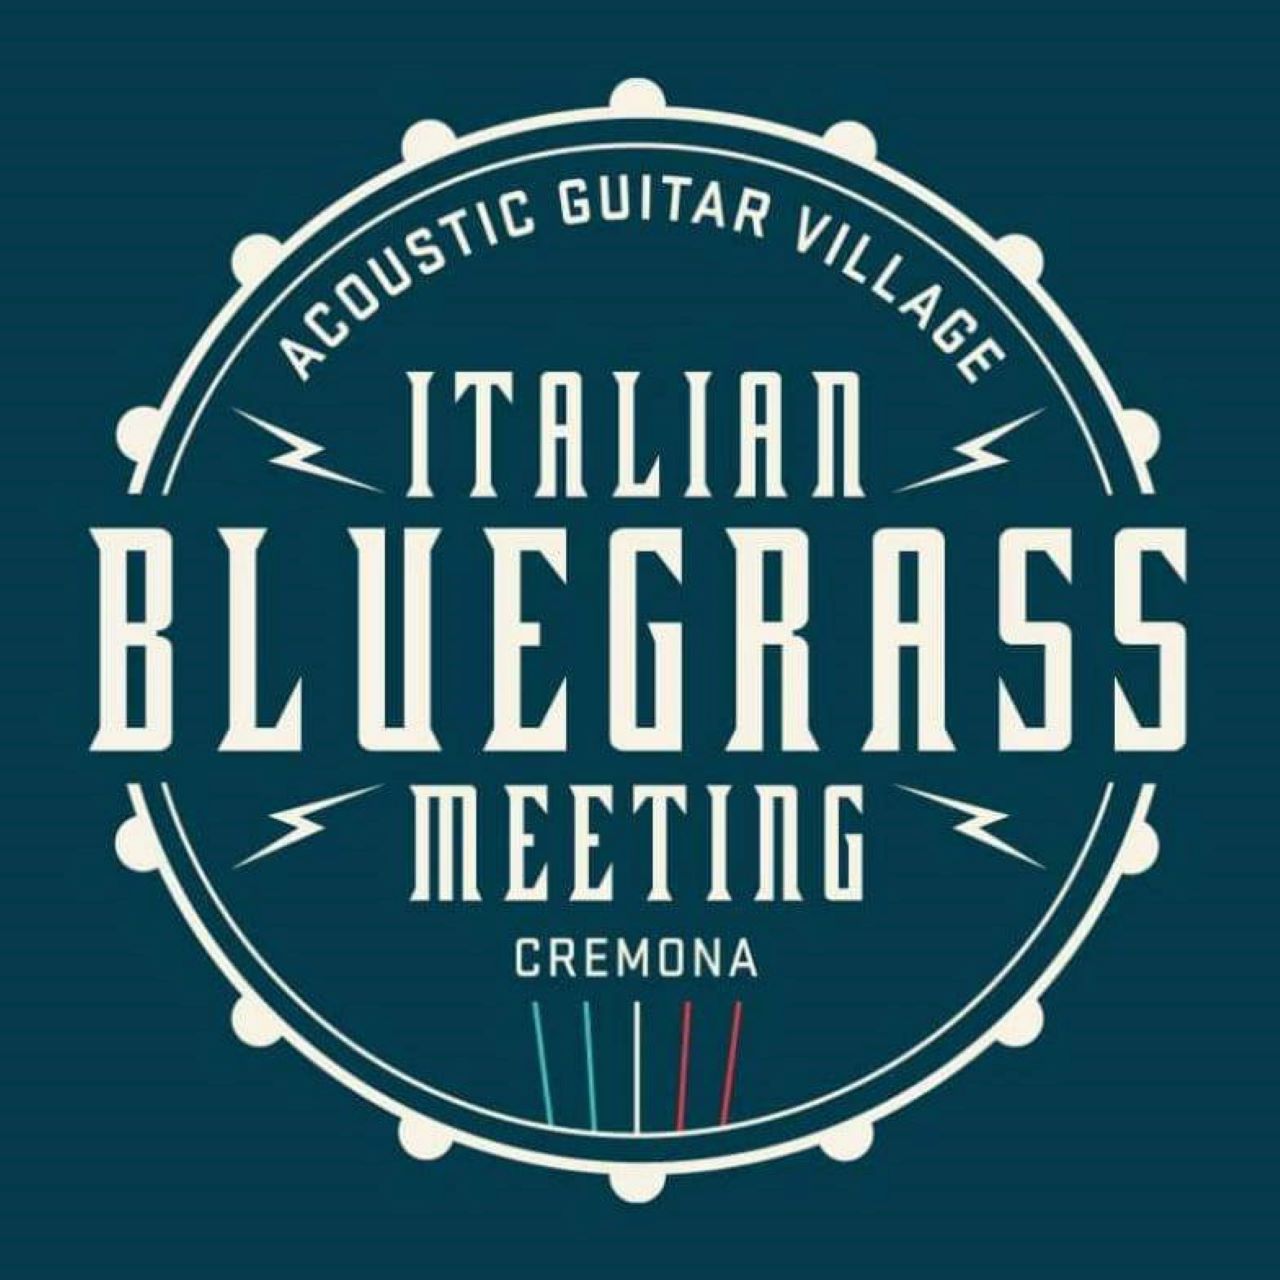 Italian Bluegrass Meeting